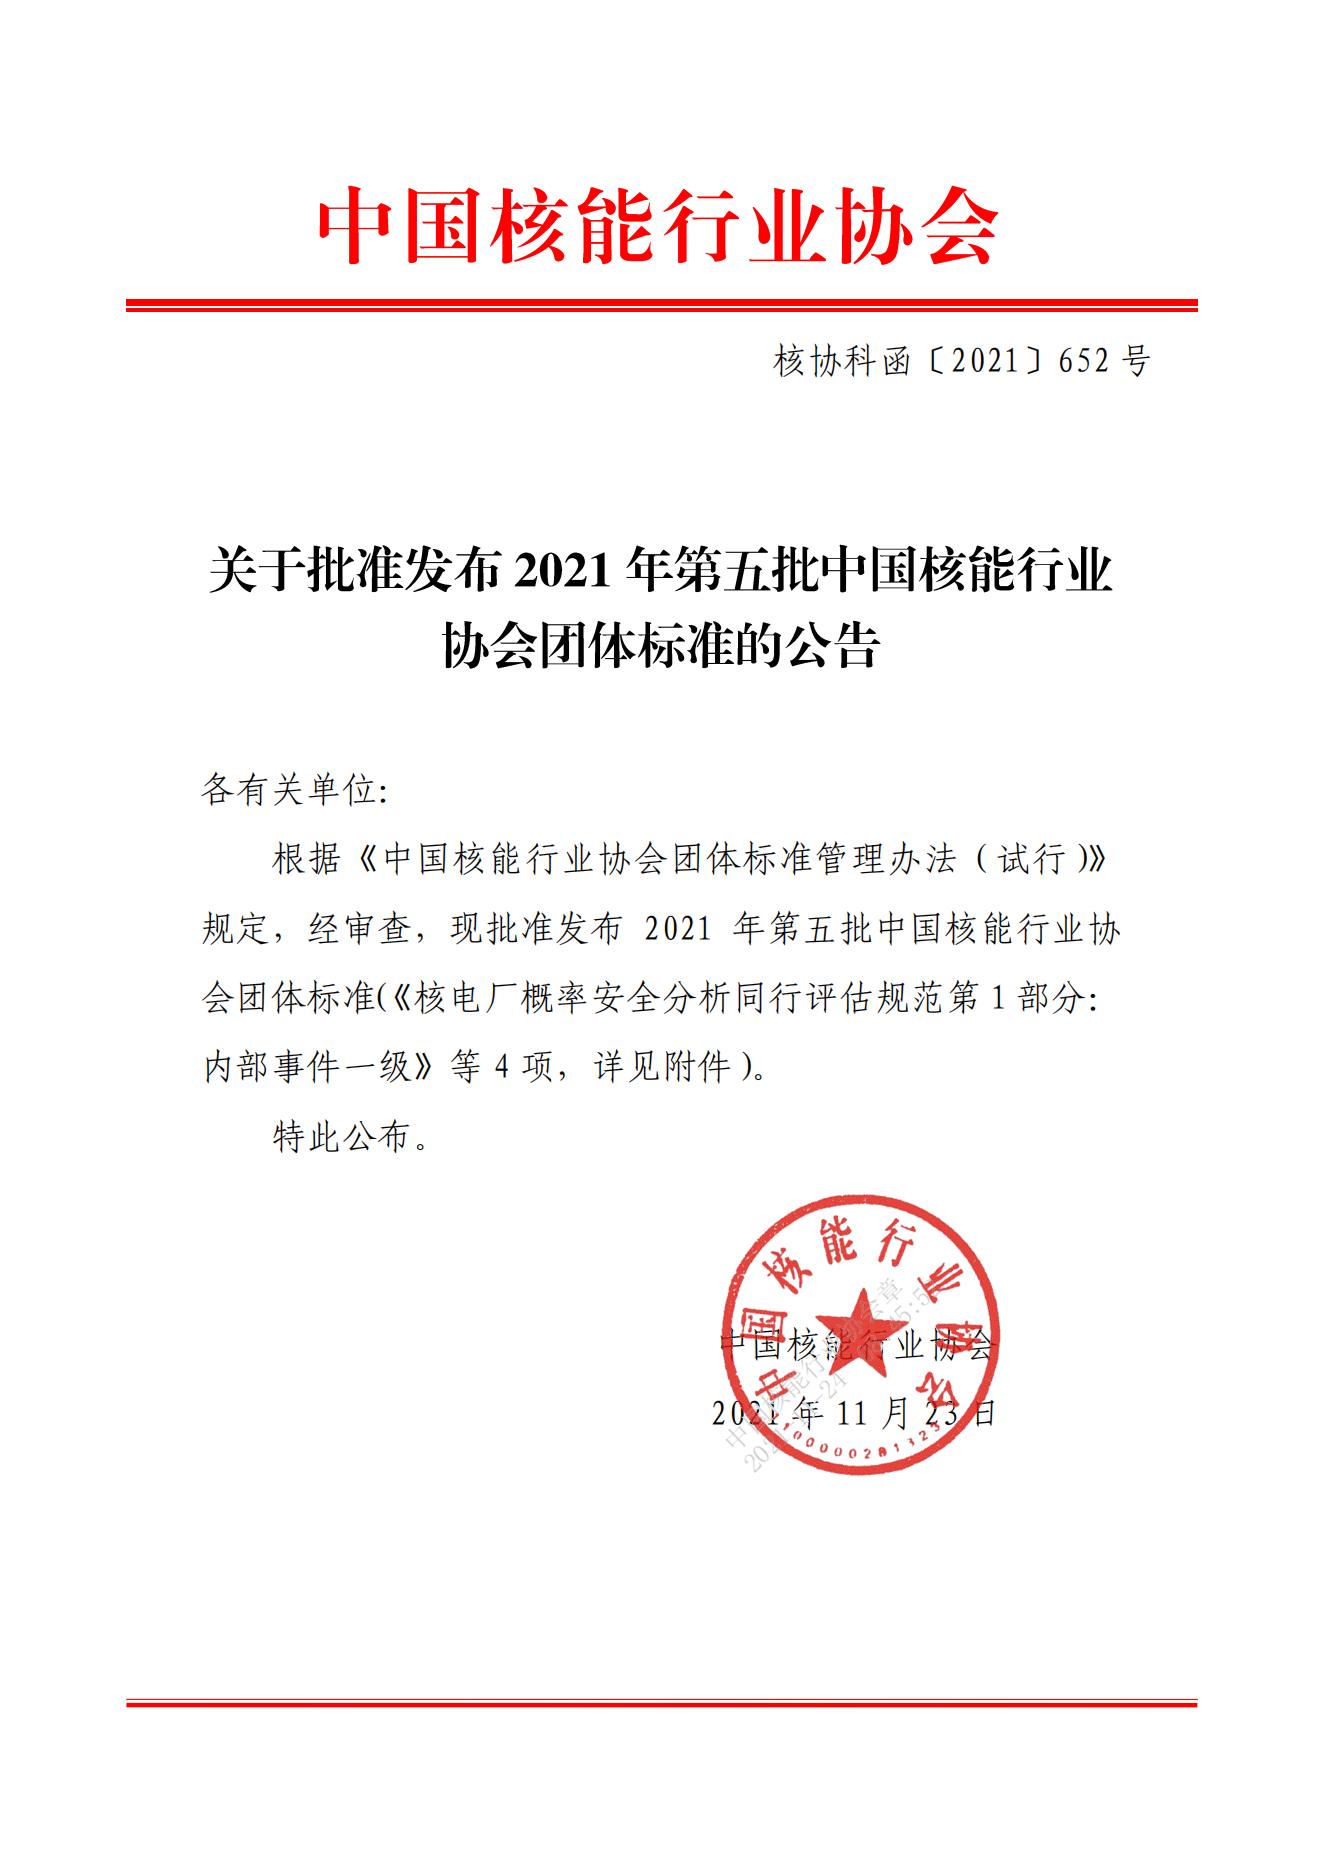 关于批准发布2021年第五批中国核能行业协会团体标准的公告_00.jpg